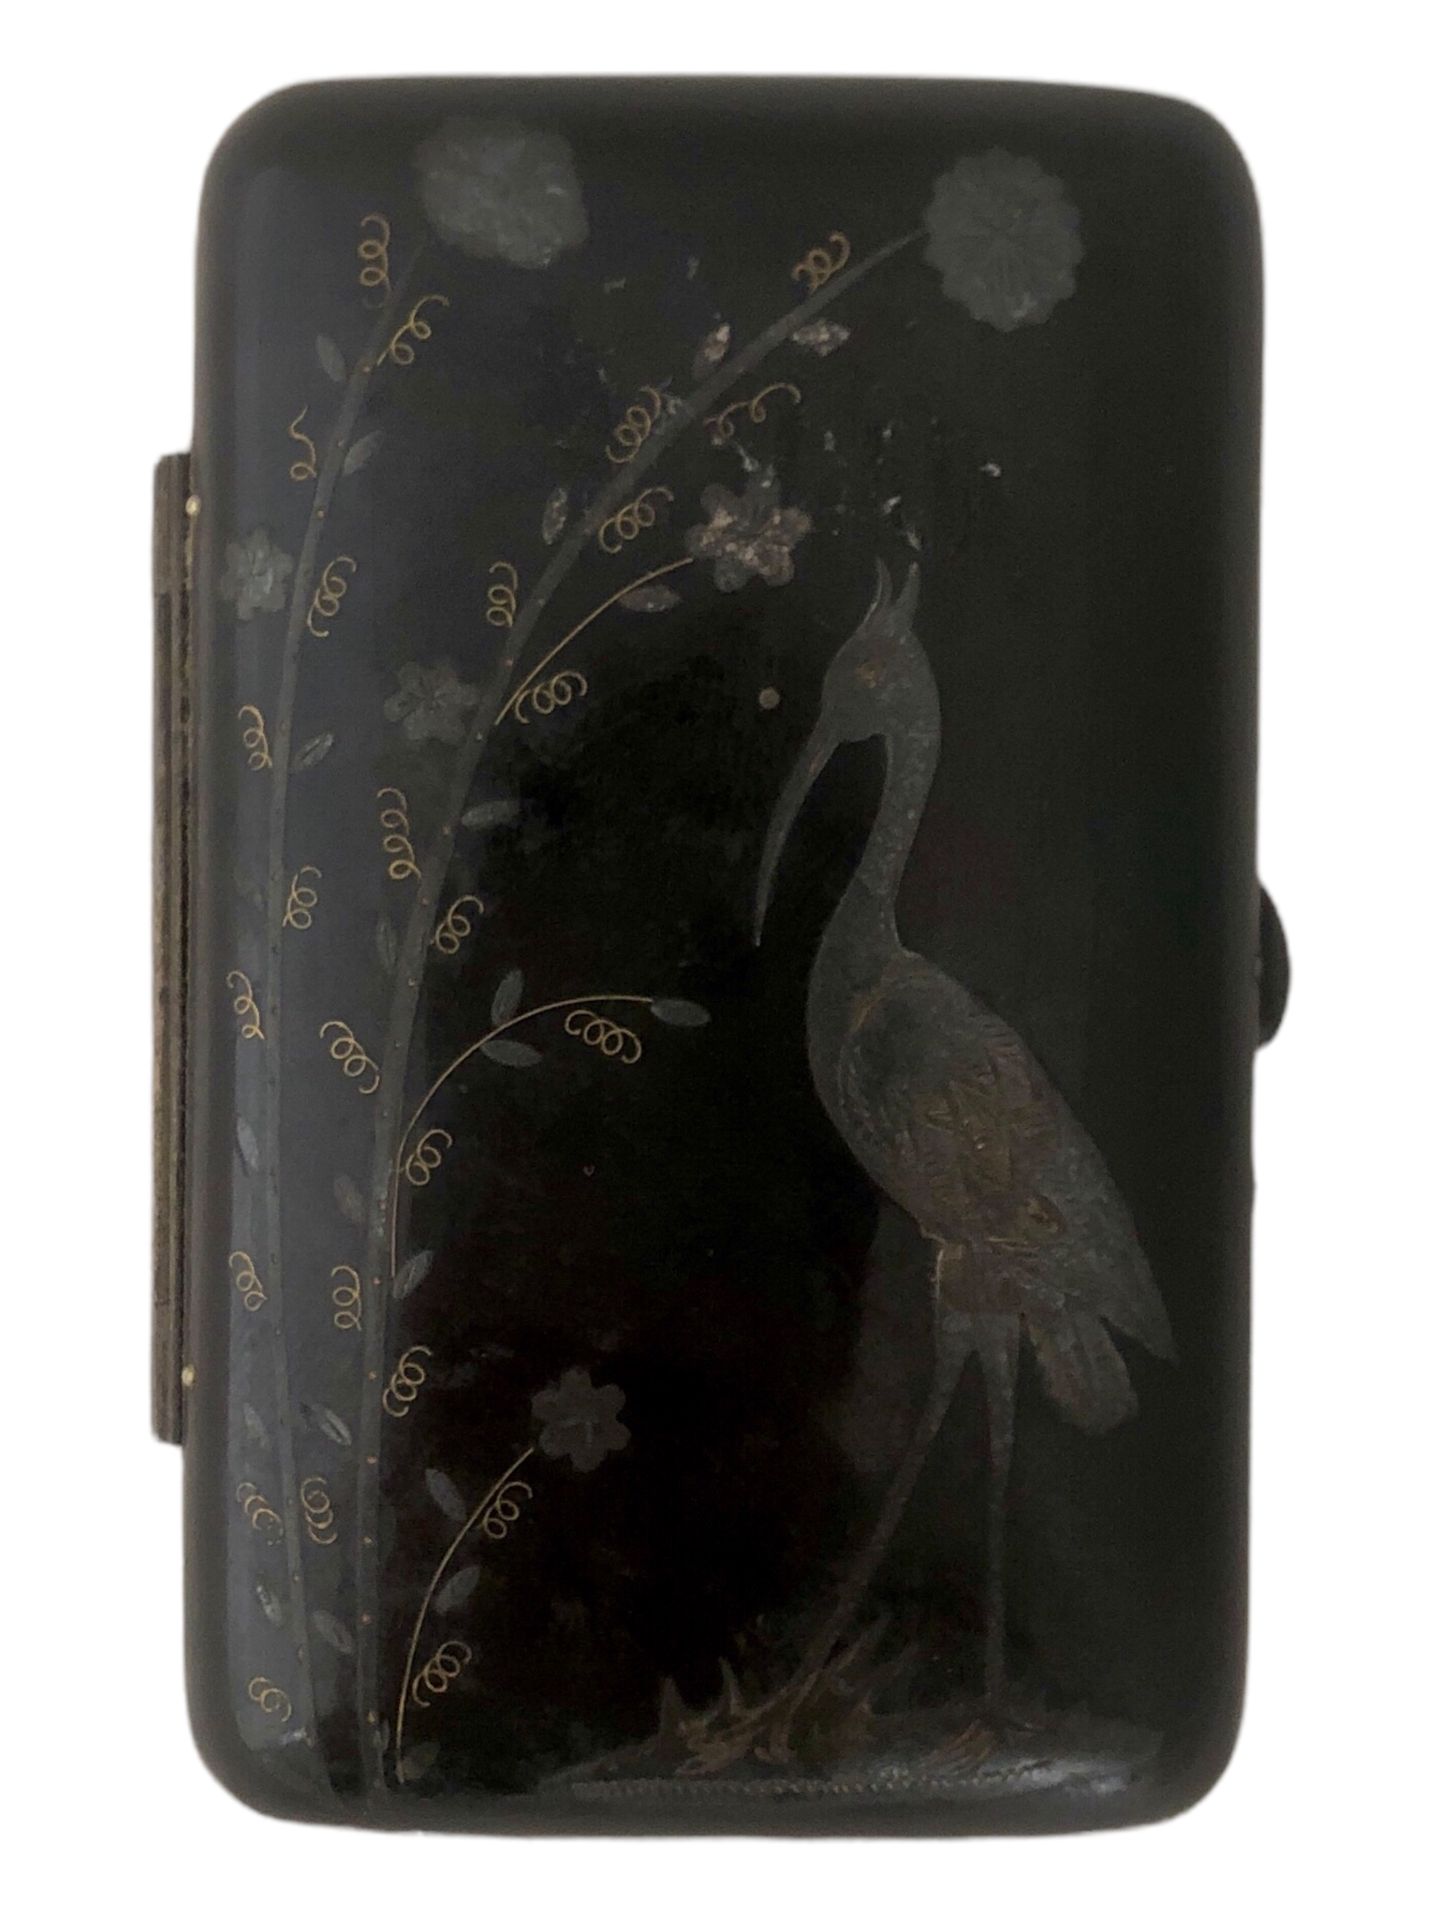 Null 牛角烟盒，嵌有代表涉水者的银和黄铜装饰。

高8.3厘米。长5.6厘米。